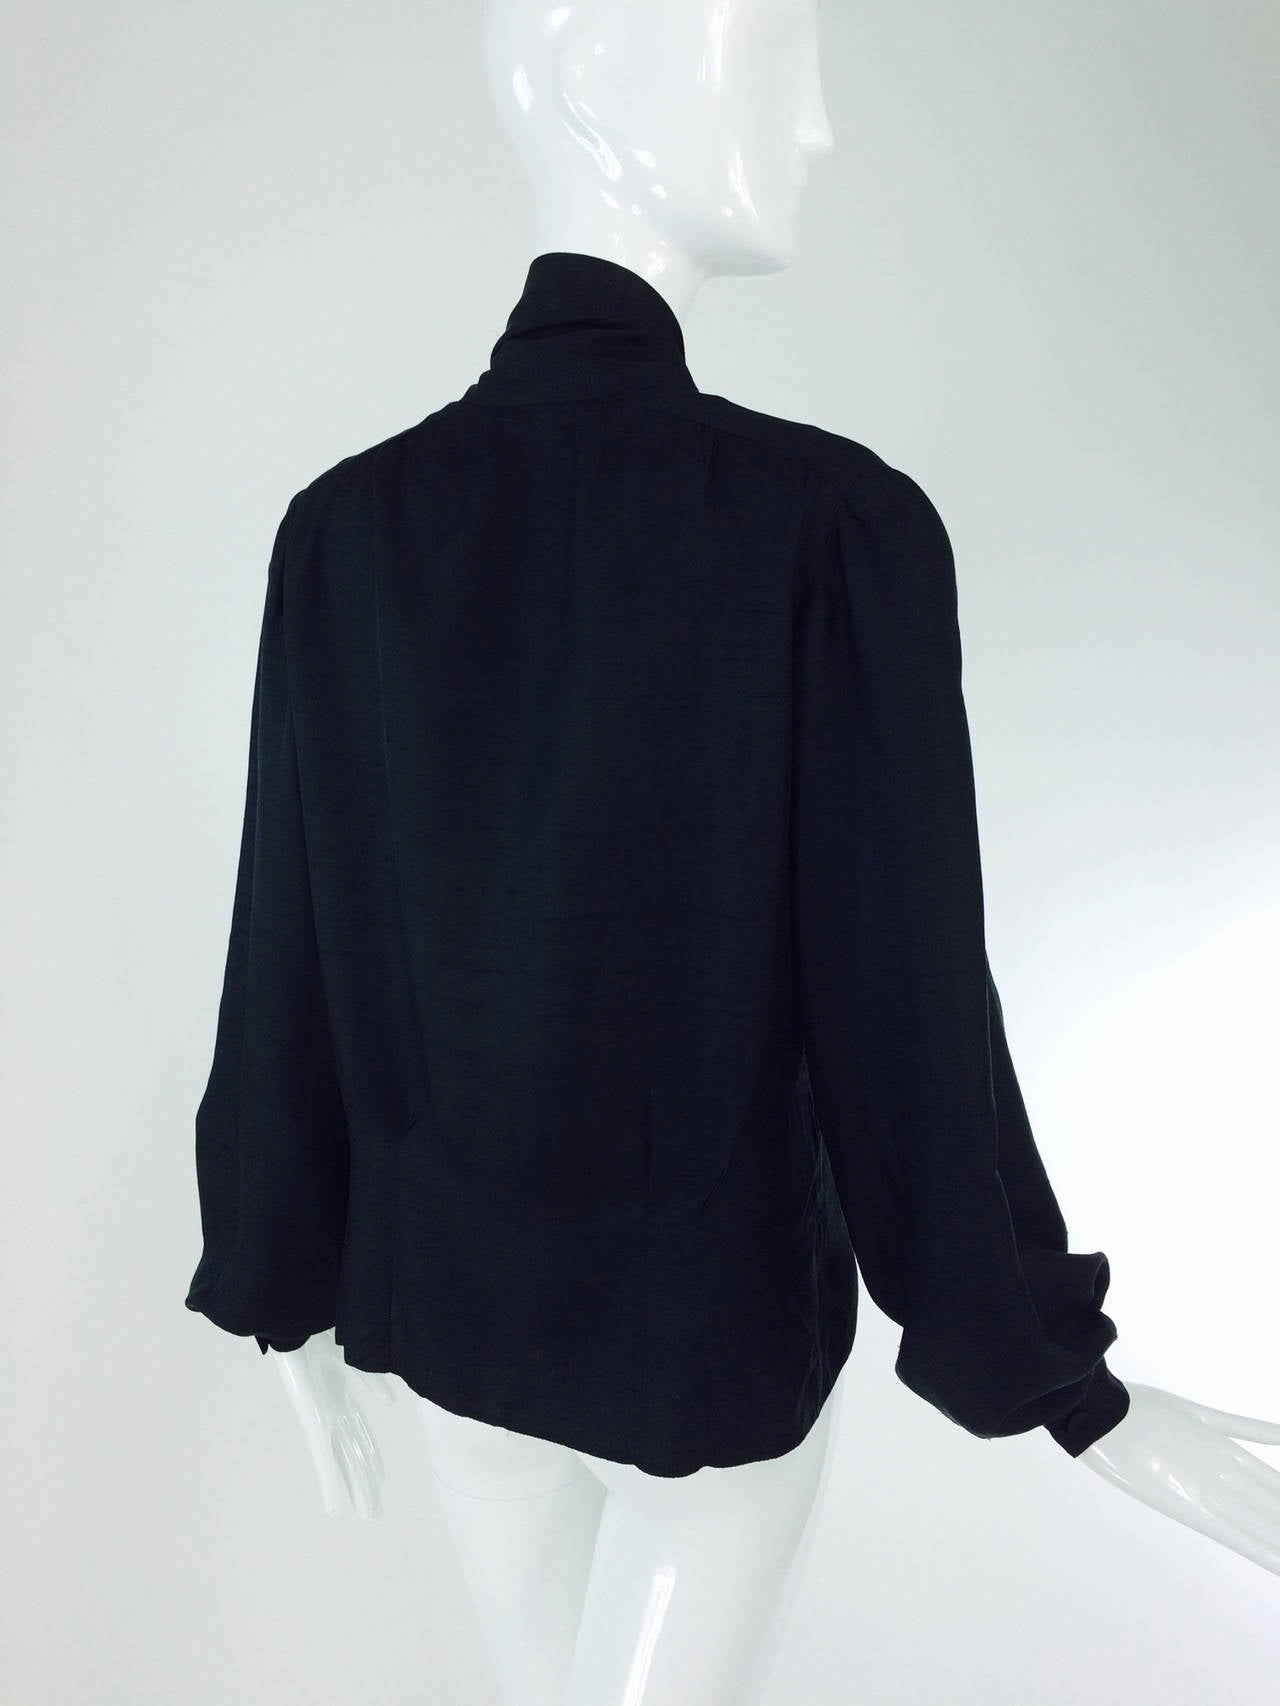 Pierre Balmain Haute Couture black Pongee silk bow tie blouse 1950s For Sale 1